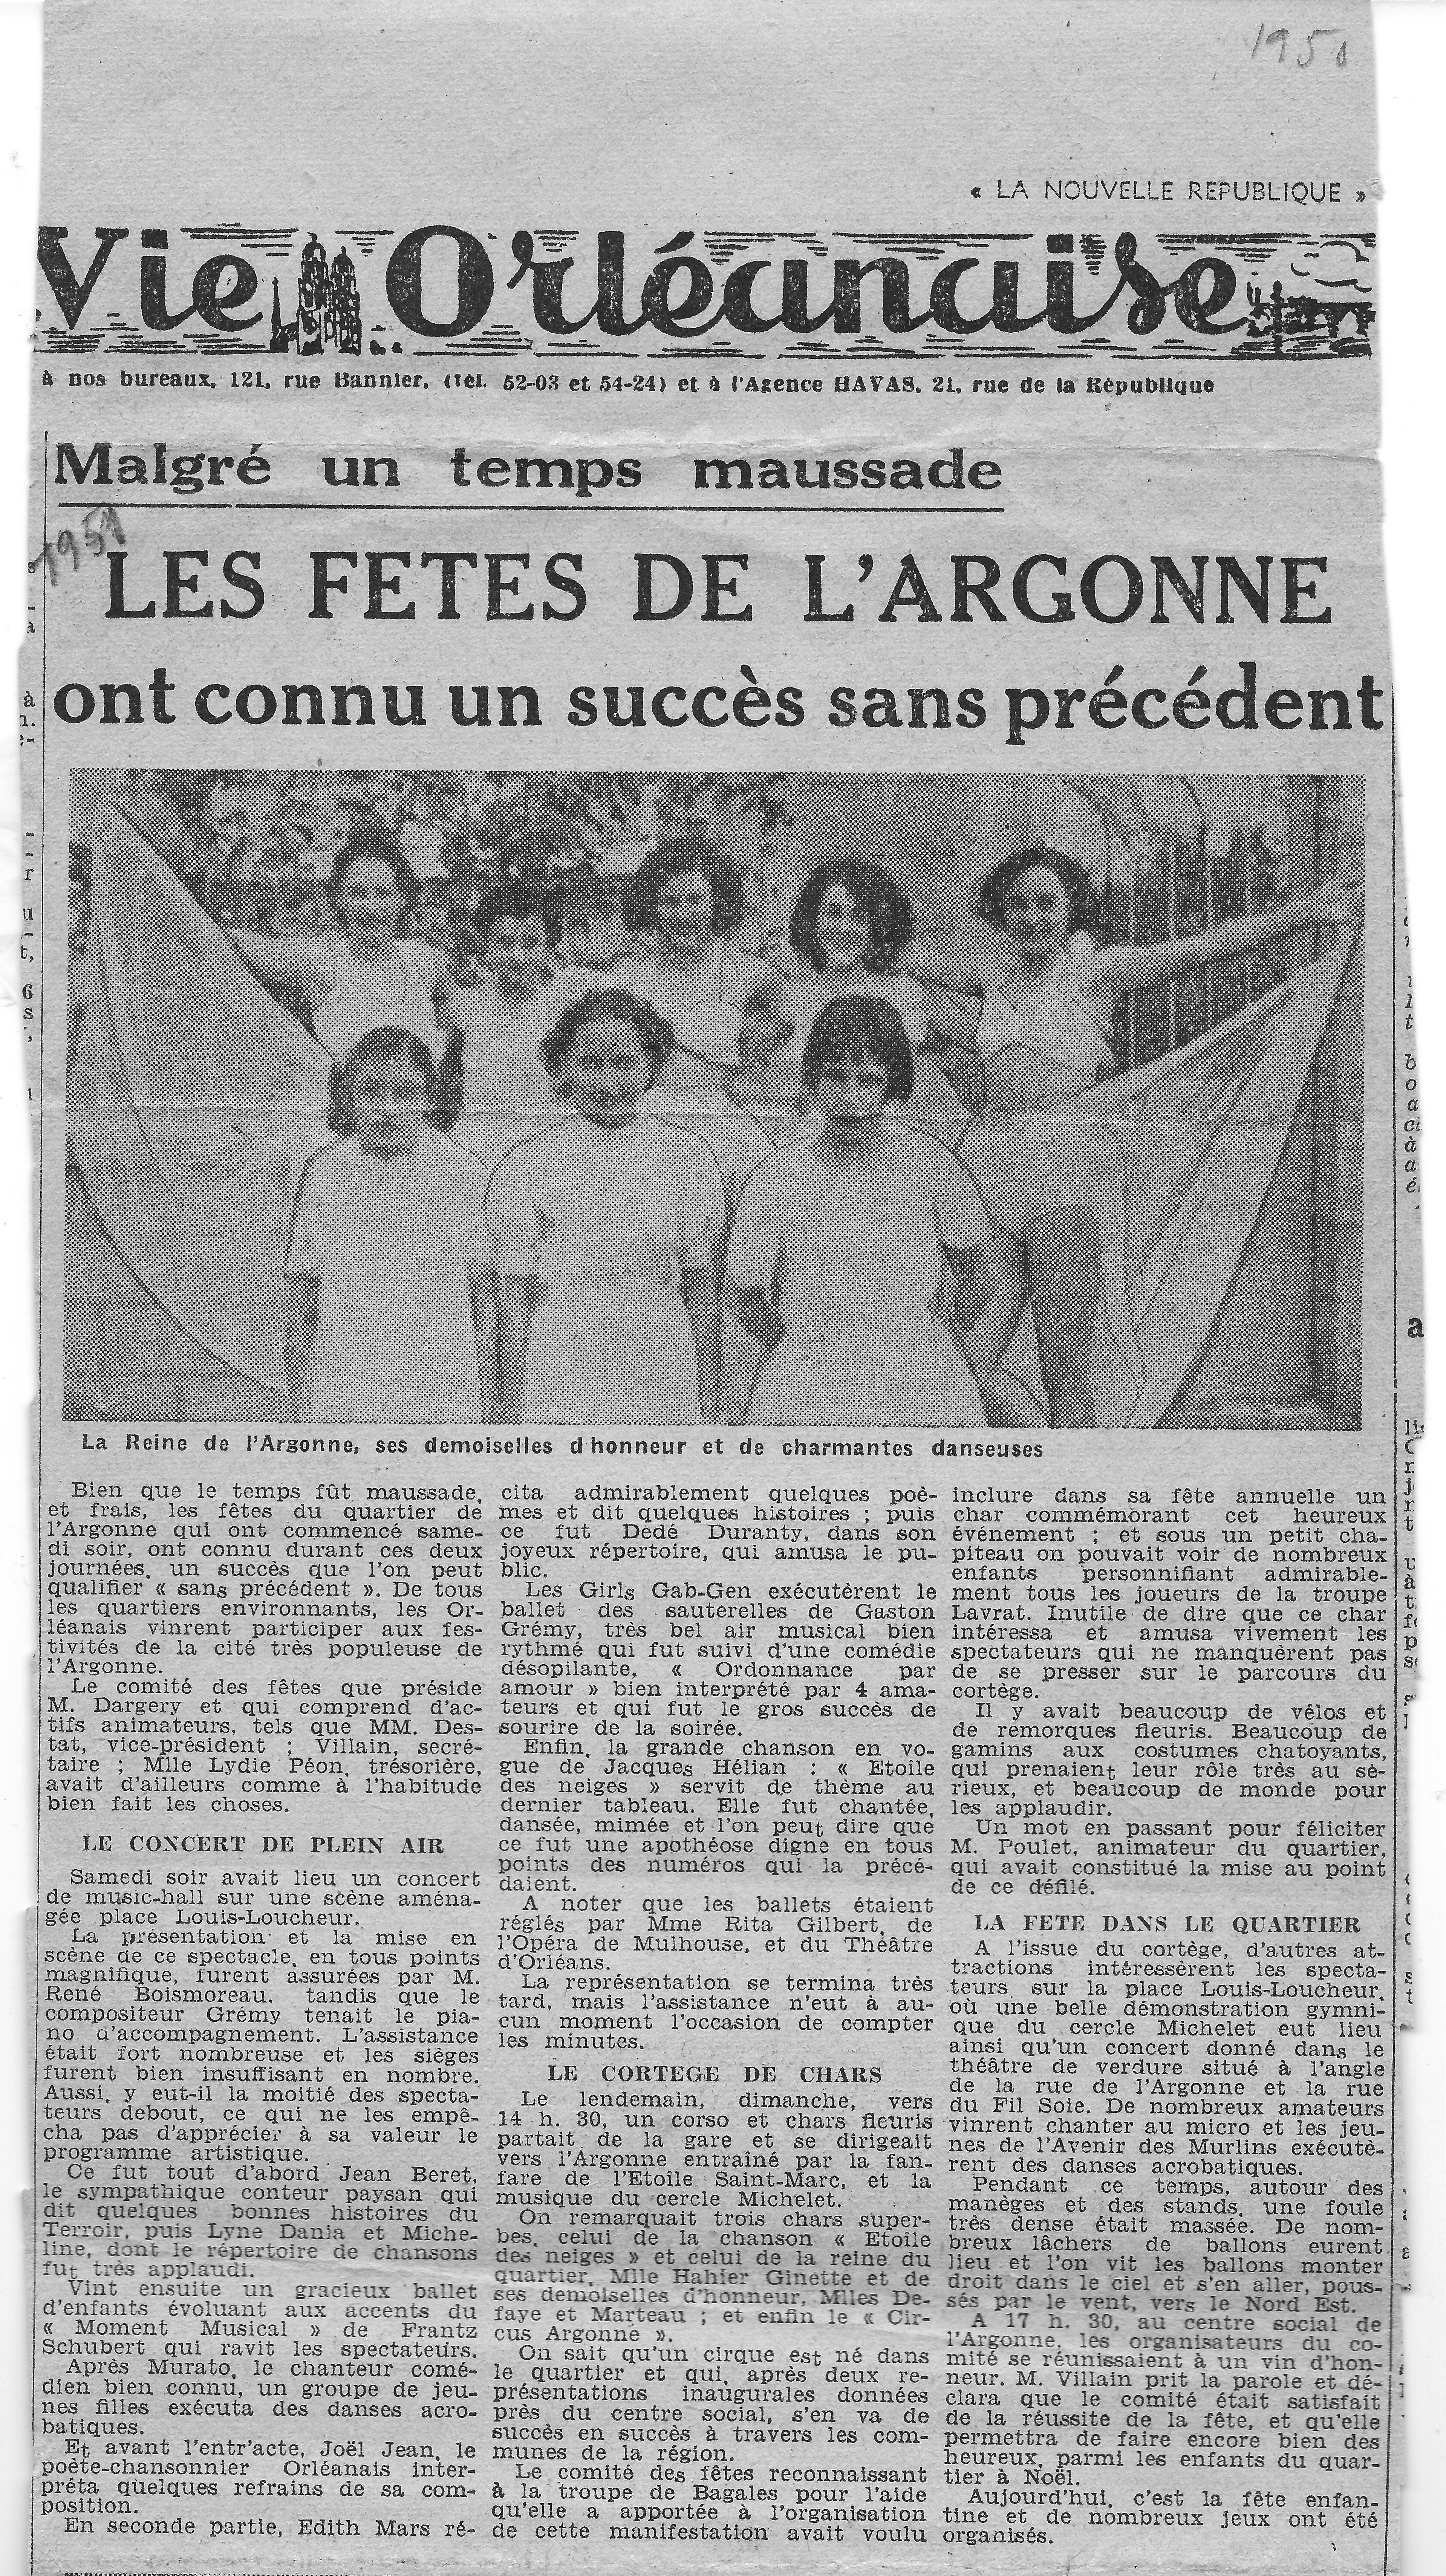 100-Docs-Lydie-Gascoin-56-Fête-de-lArgonne-1951-1